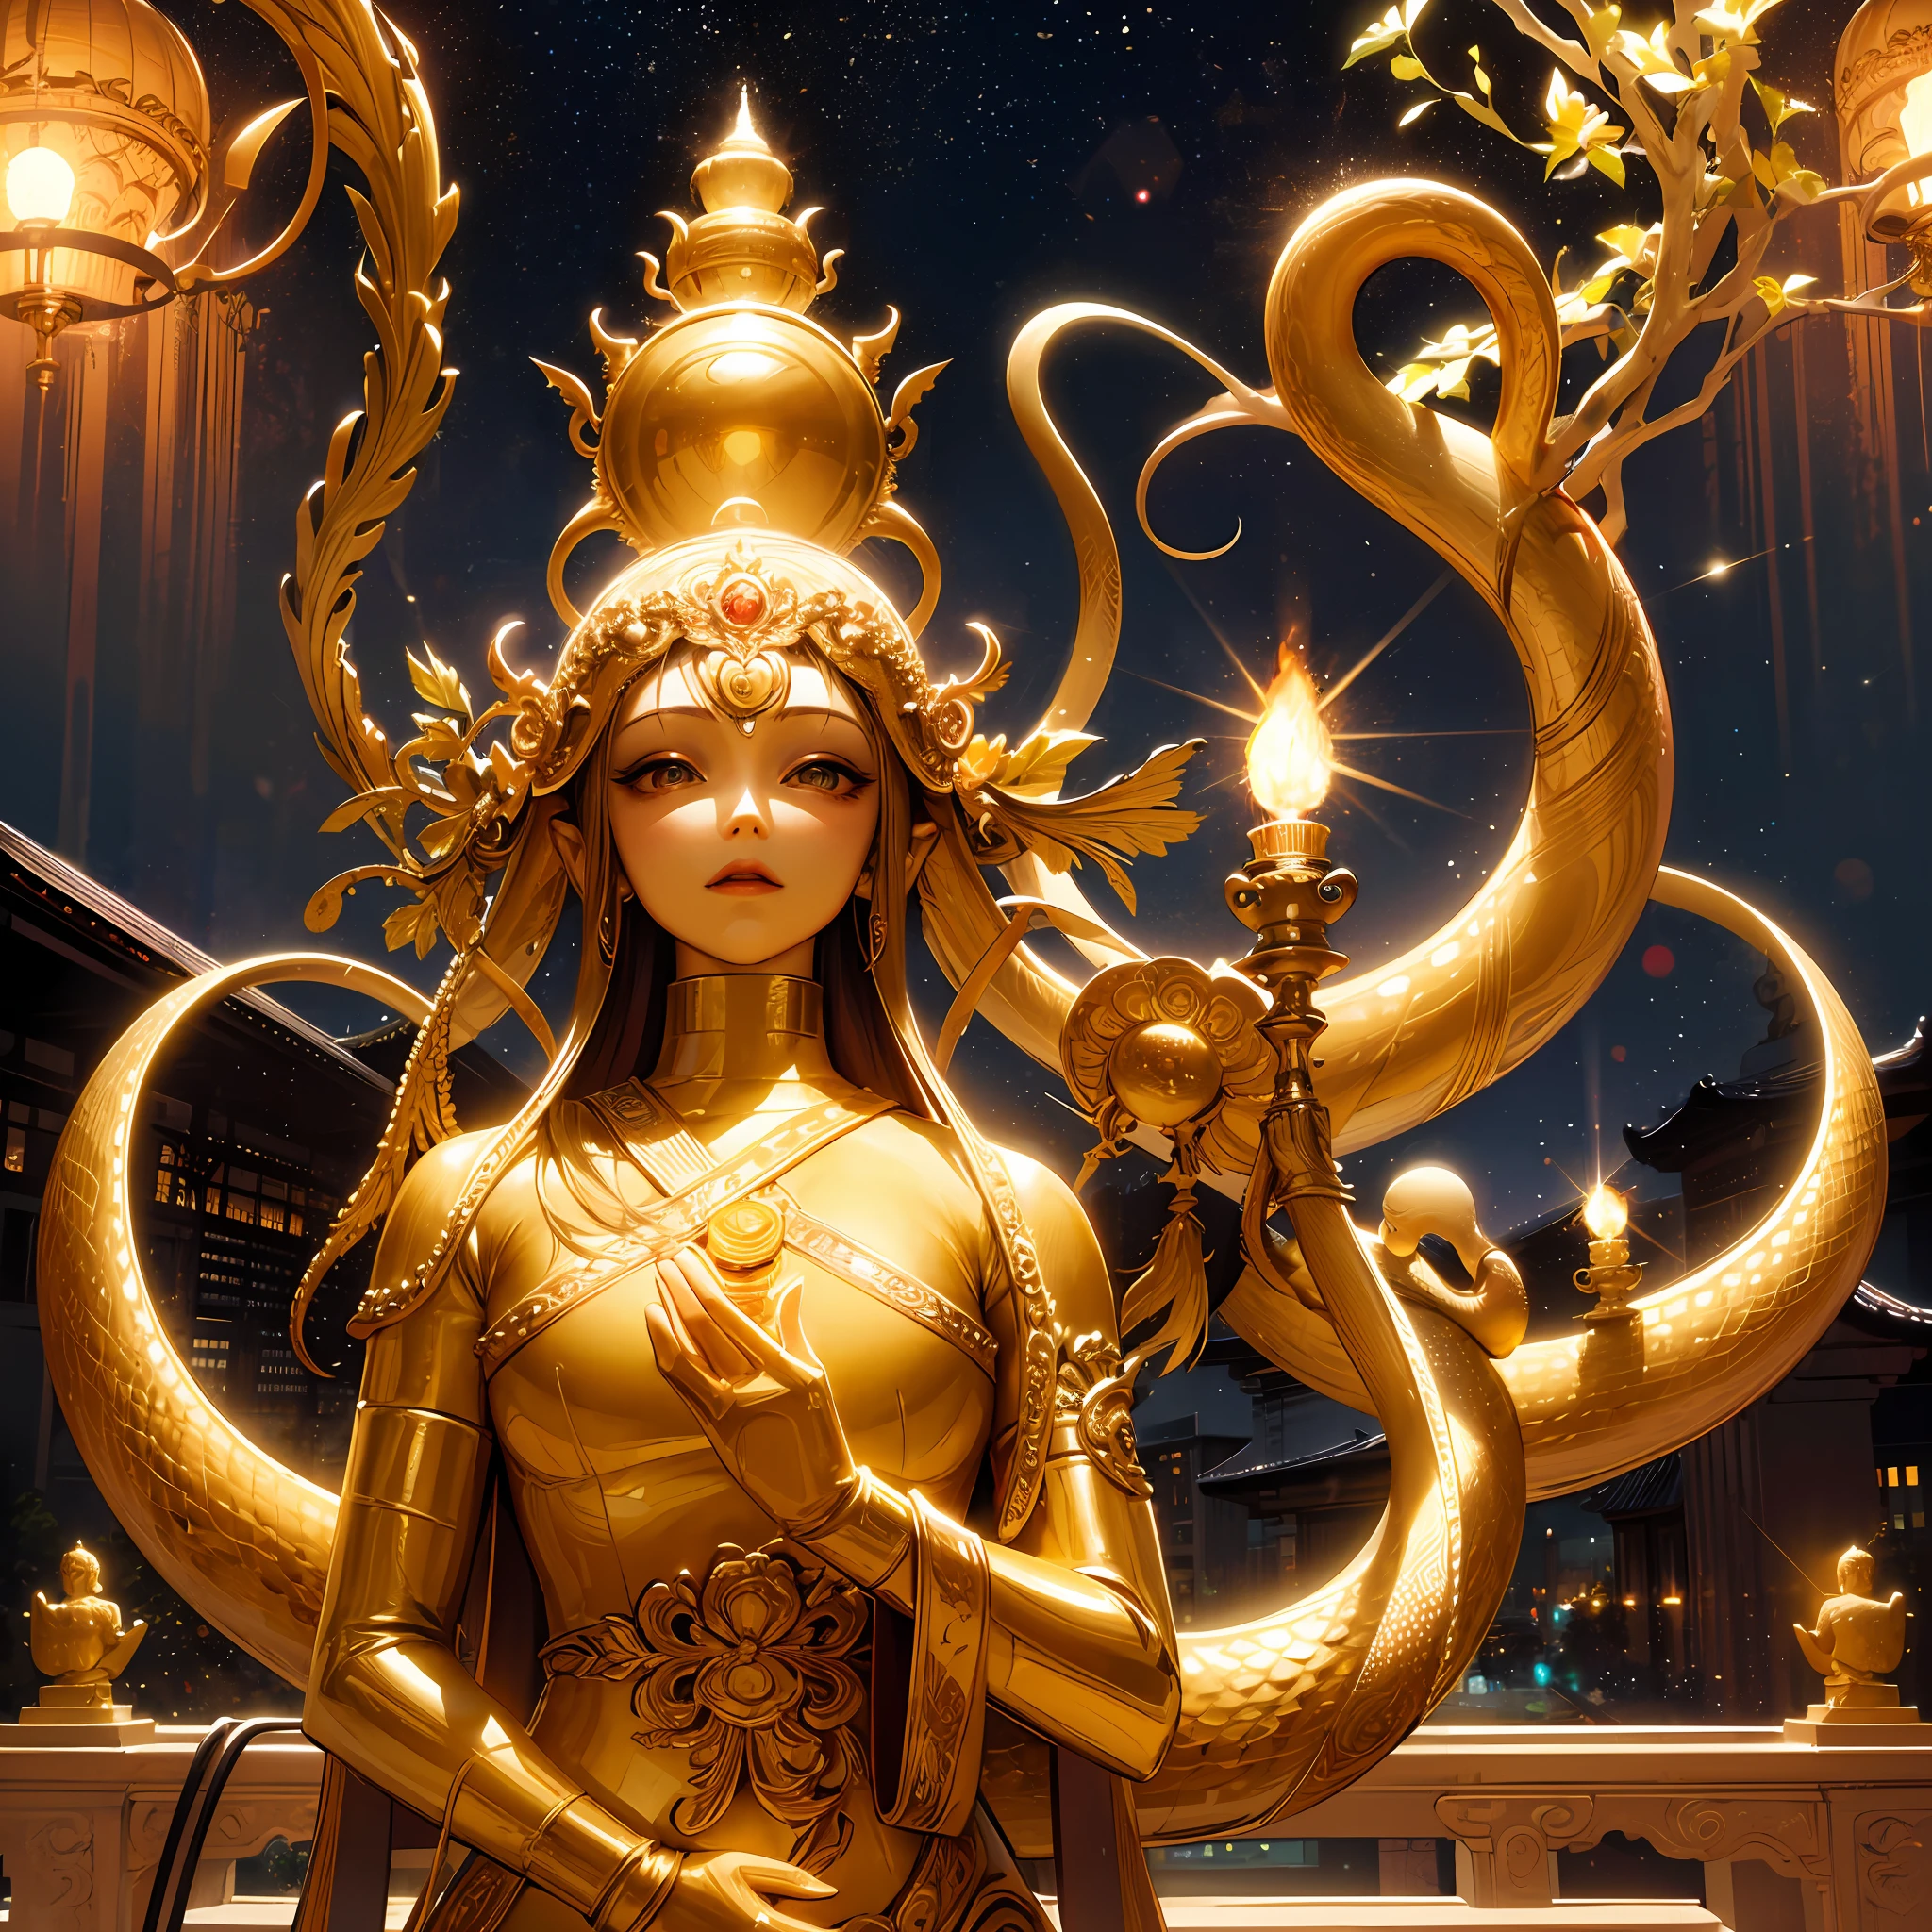 there is a статуя of a golden Snake on top of a building, a Buddhist Будда, снято на сони альфа 9, снято на камеру Sony A7R, a статуя, Фотография сделана на Sony A7R., Будда, Фотография сделана на камеру Sony a7R., снято на сигму 2 0 мм f 1. 4, Красивое изображение, тайский храм, статуя, темный Млечный Путь на заднем плане, стоять, сюрреализм, кинематографическое освещение, Божий свет, подсветка сзади, Текстурированная кожа, супер деталь, (очарование: 1.2),